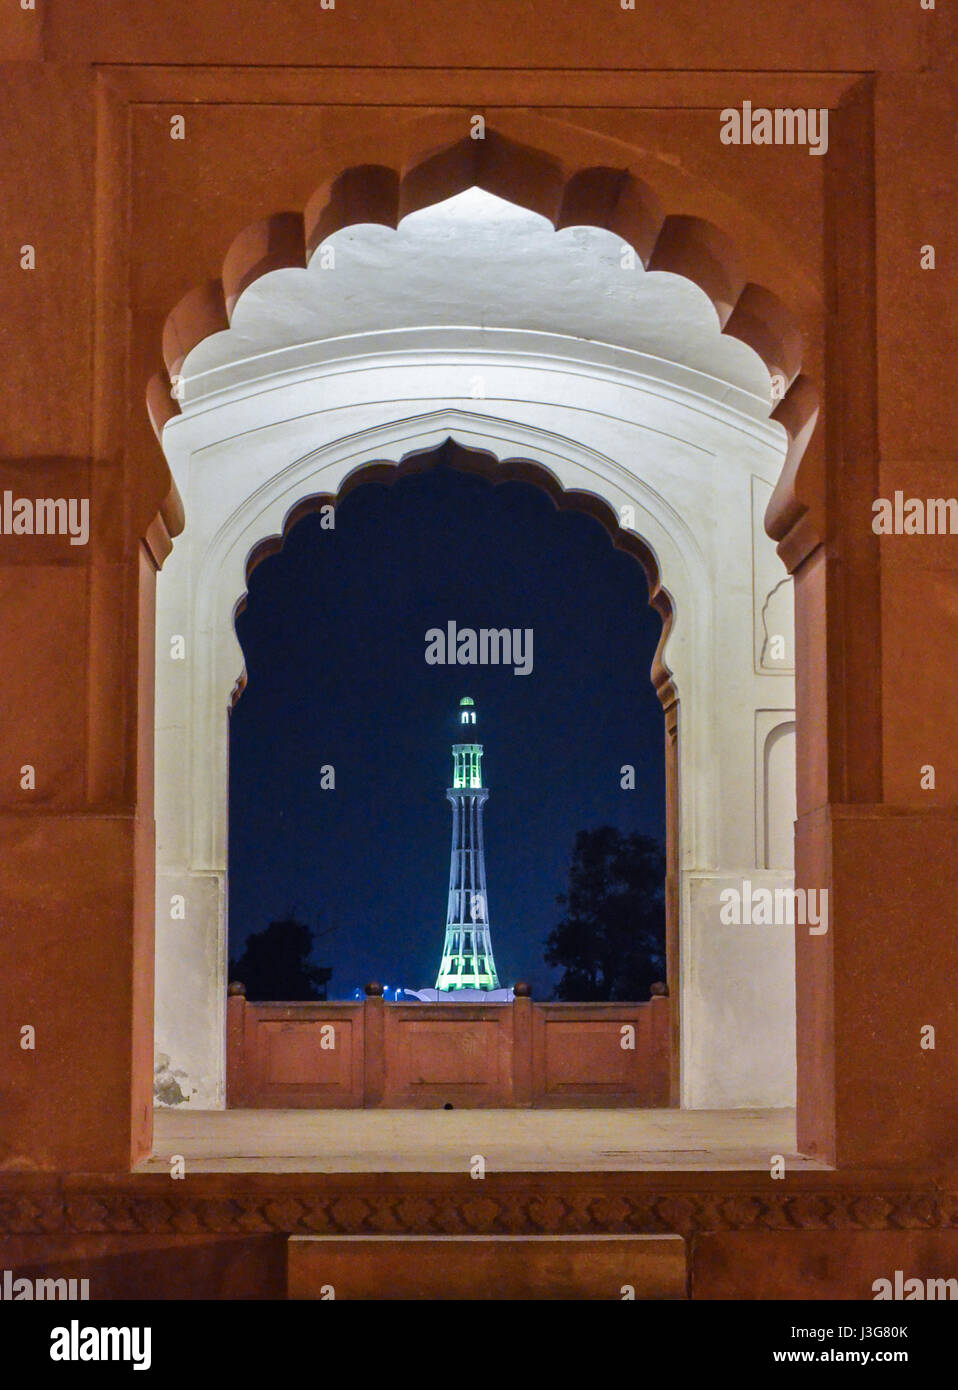 Minar e Pakistán desde la ventana de la Mezquita Badshahi, Lahore-Pakistan vista nocturna Foto de stock